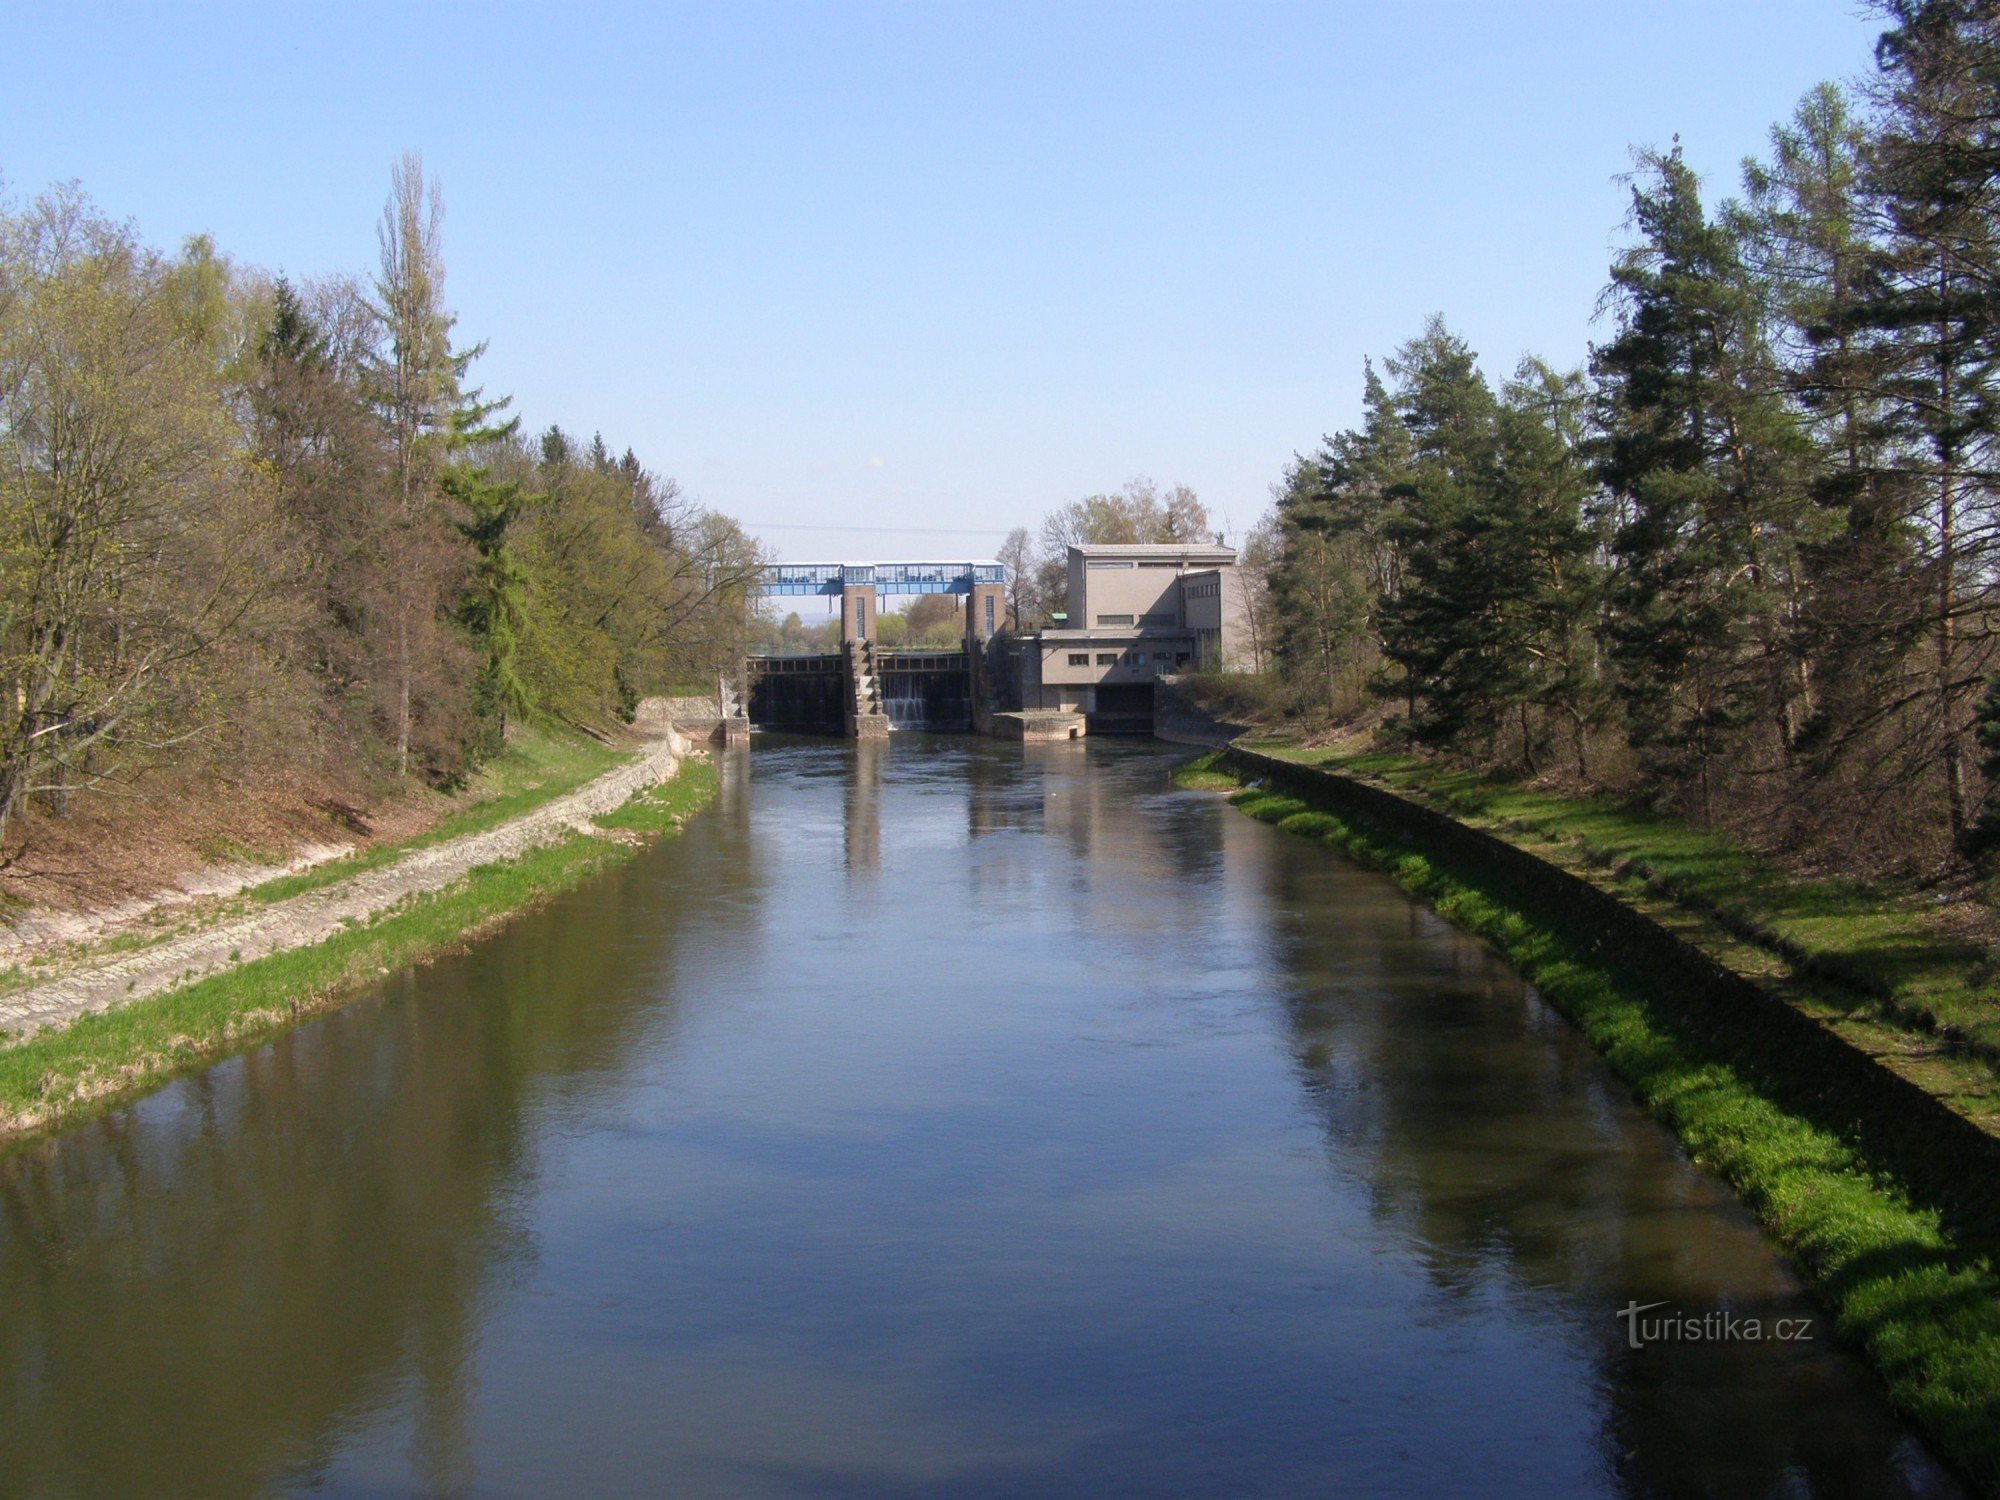 Đập Smiřický - nhà máy thủy điện trên sông Elbe